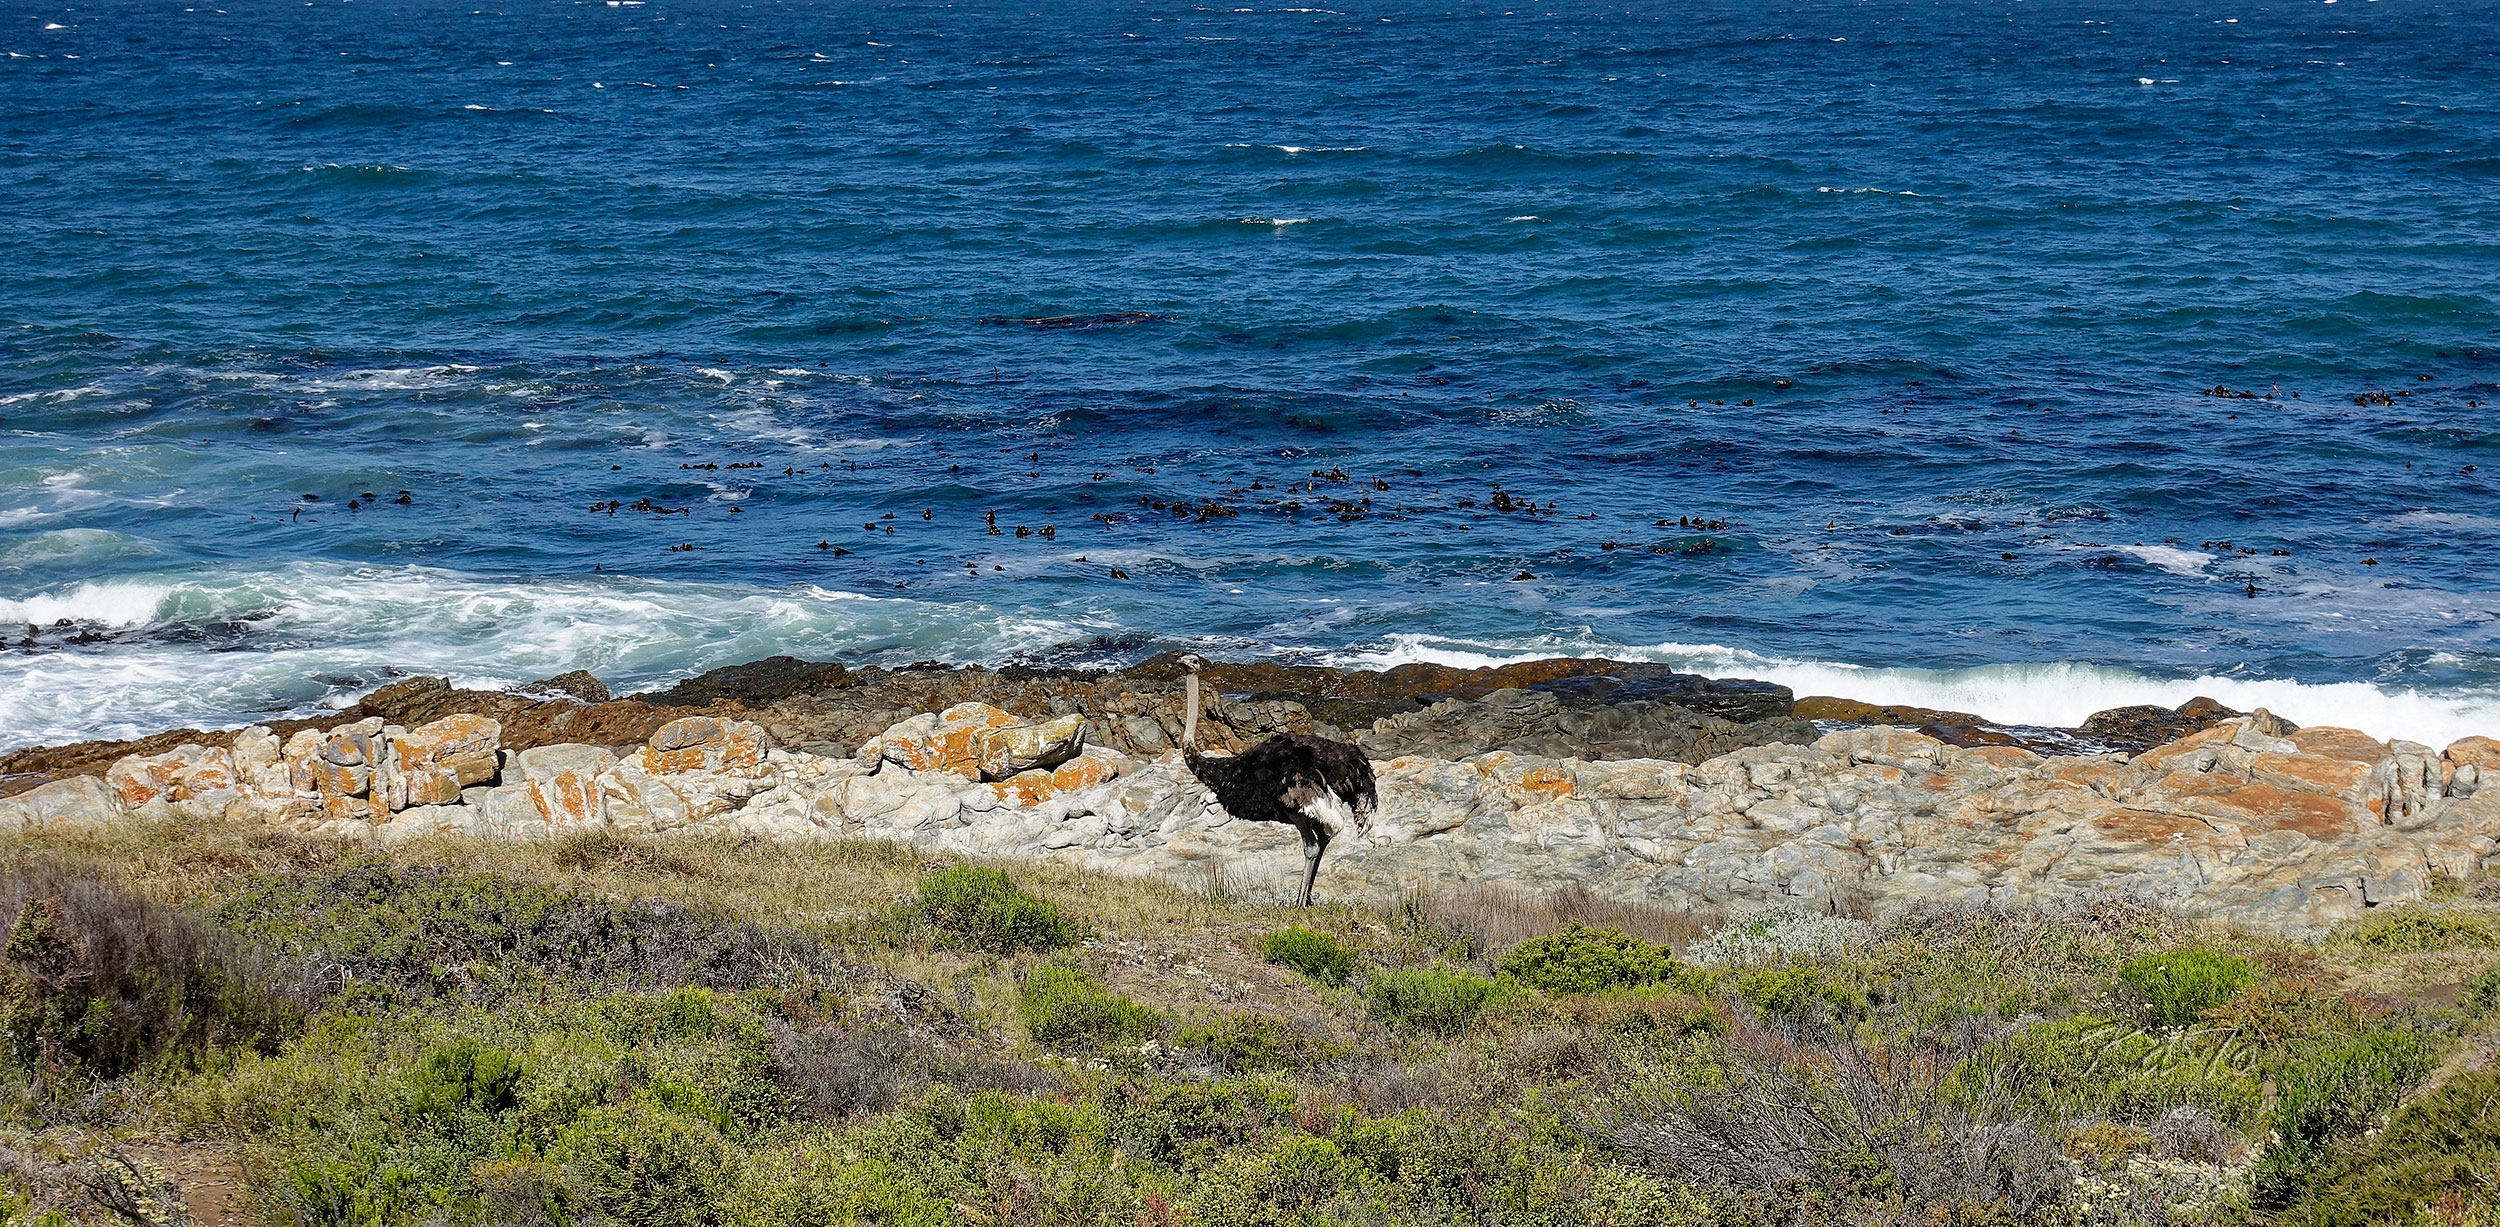 Ostrich at Cape Peninsula